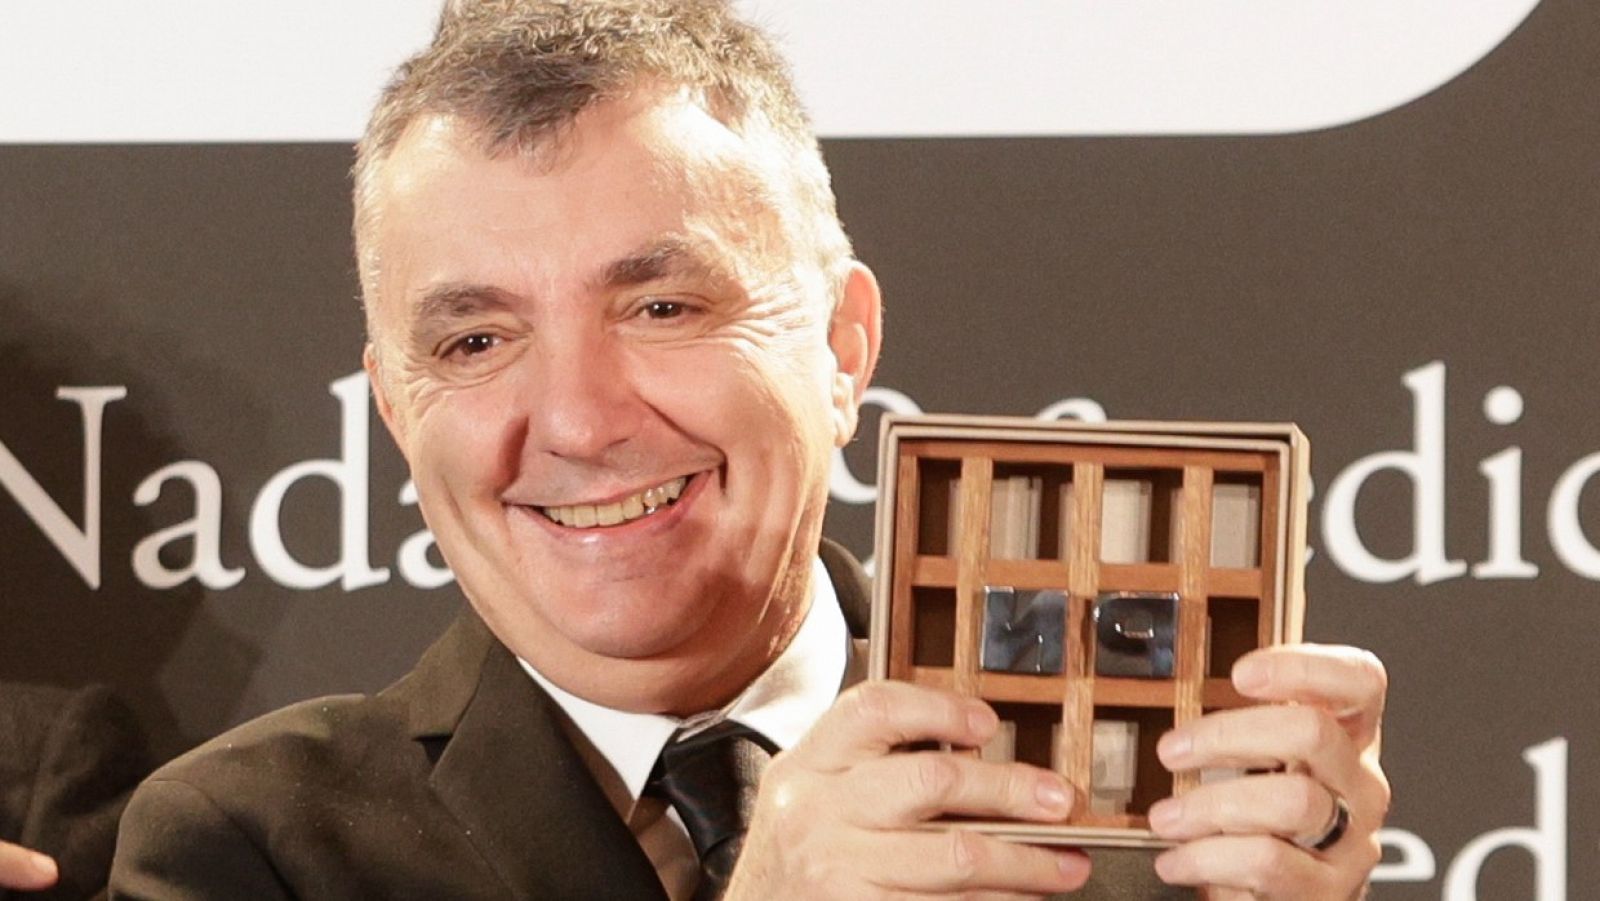 El poeta y escritor Manuel Vilas gana la 79 edición del Premio Nadal de novela